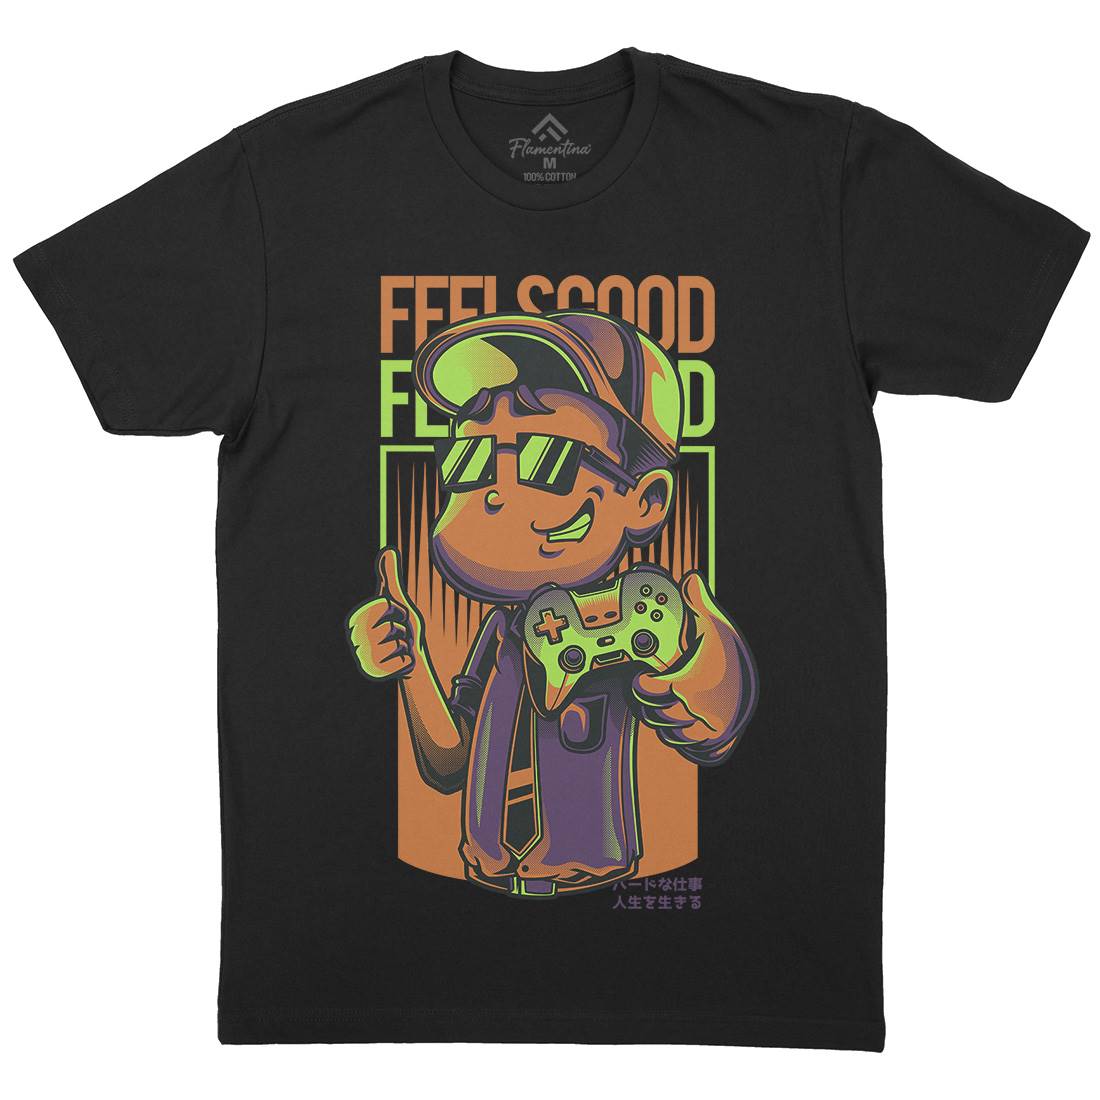 Feels Good Mens Crew Neck T-Shirt Geek D773